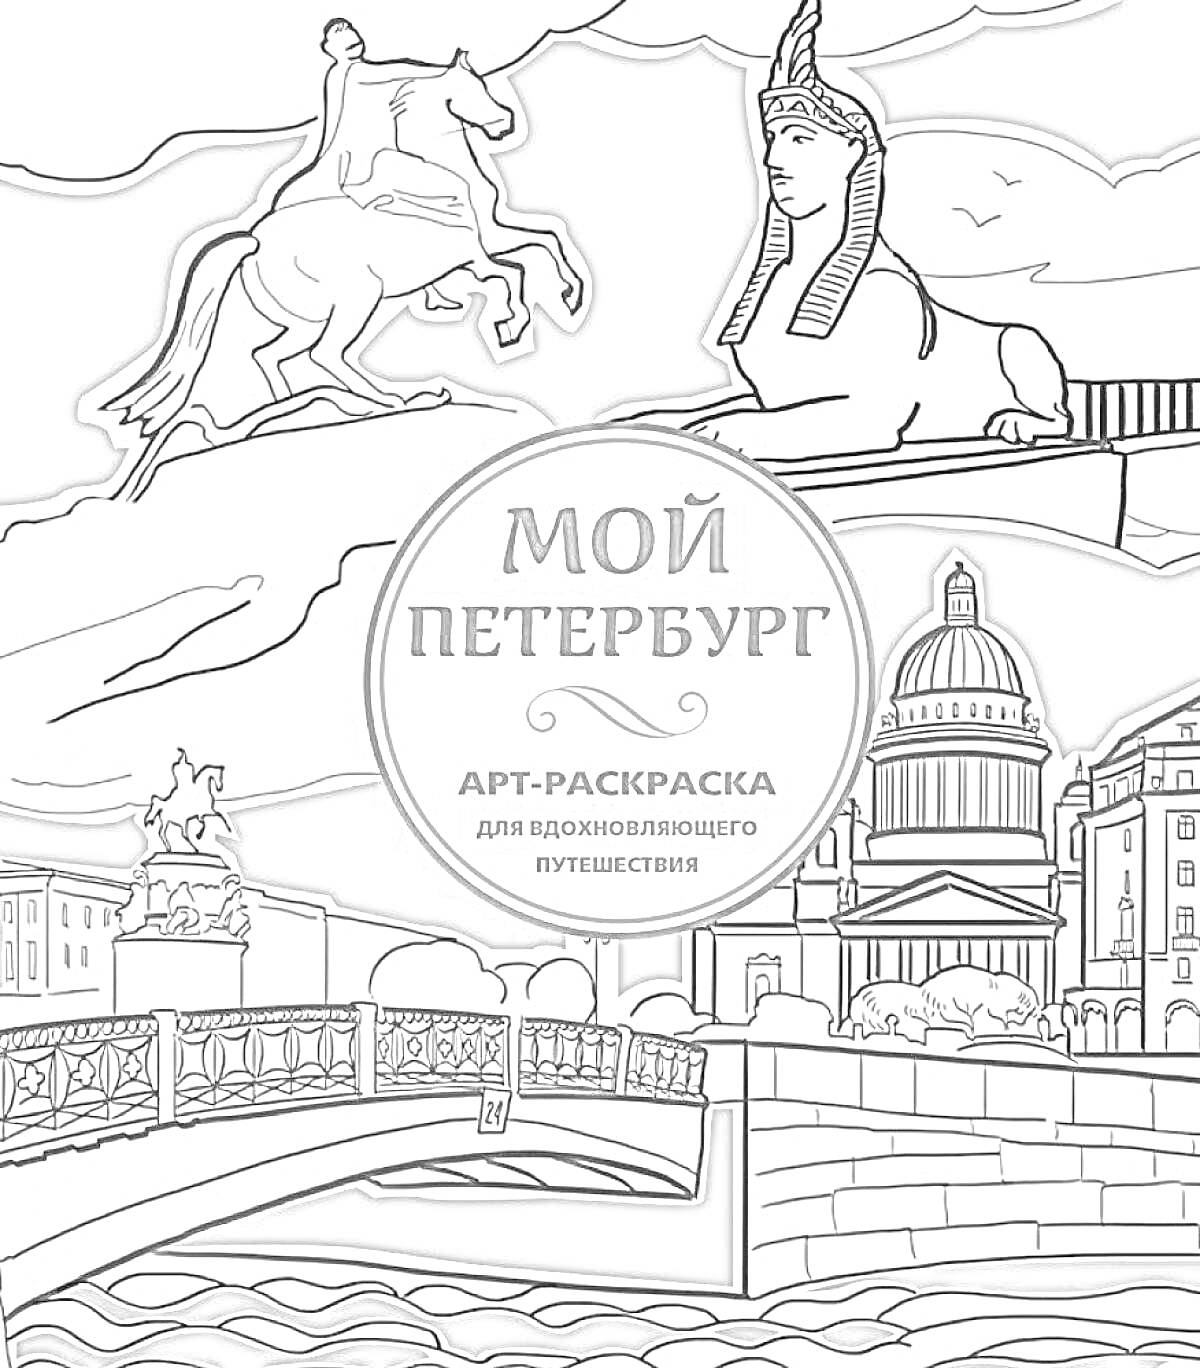 Раскраска Мой Петербург. Изображены всадник на коне, статуя сфинкса, купол Исаакиевского собора, мост через канал и архитектурные здания.